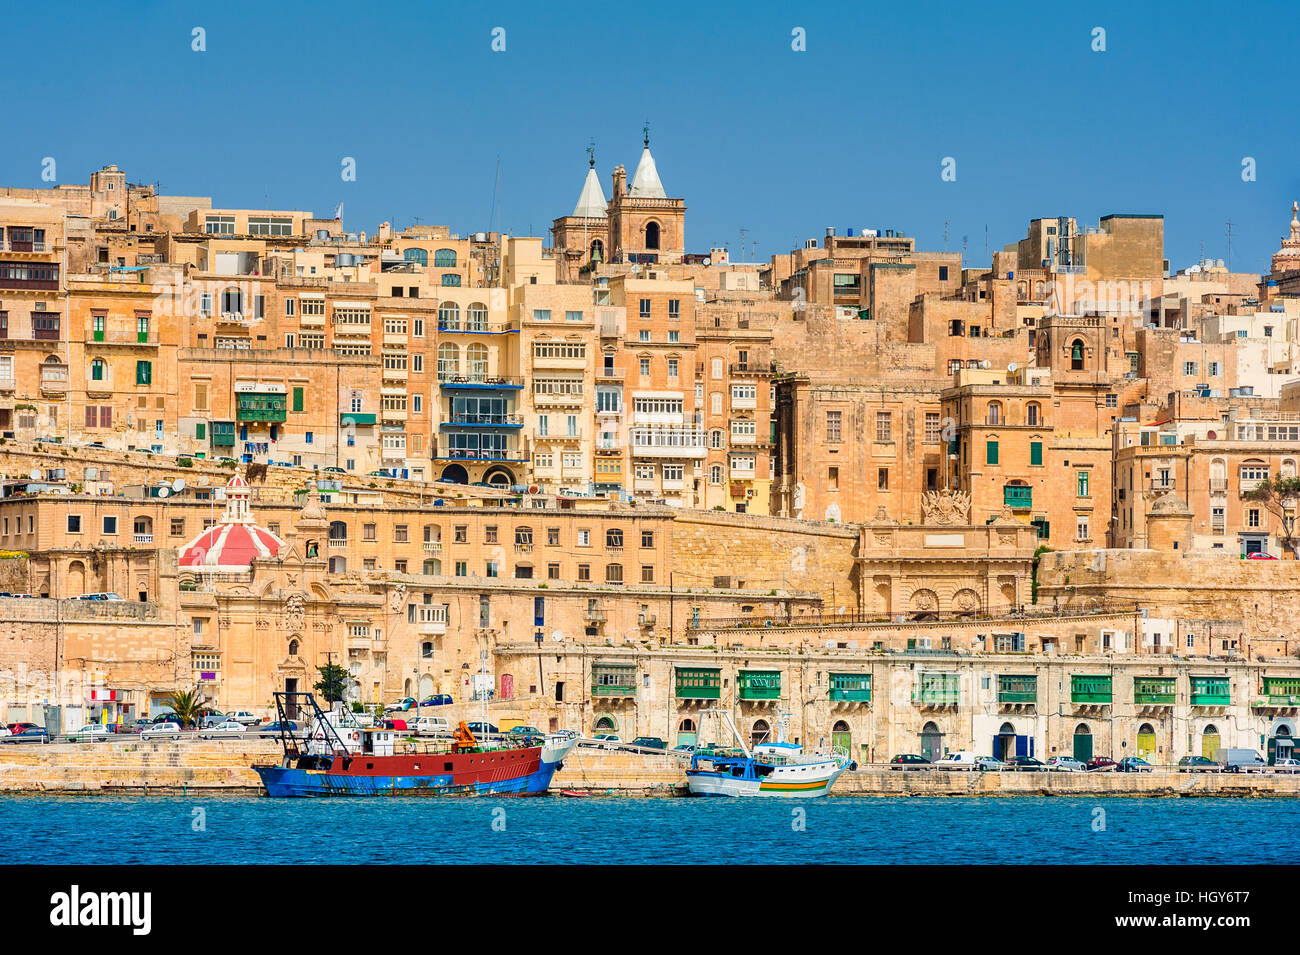 Ciudad fortificada de Valletta, Malta Foto de stock